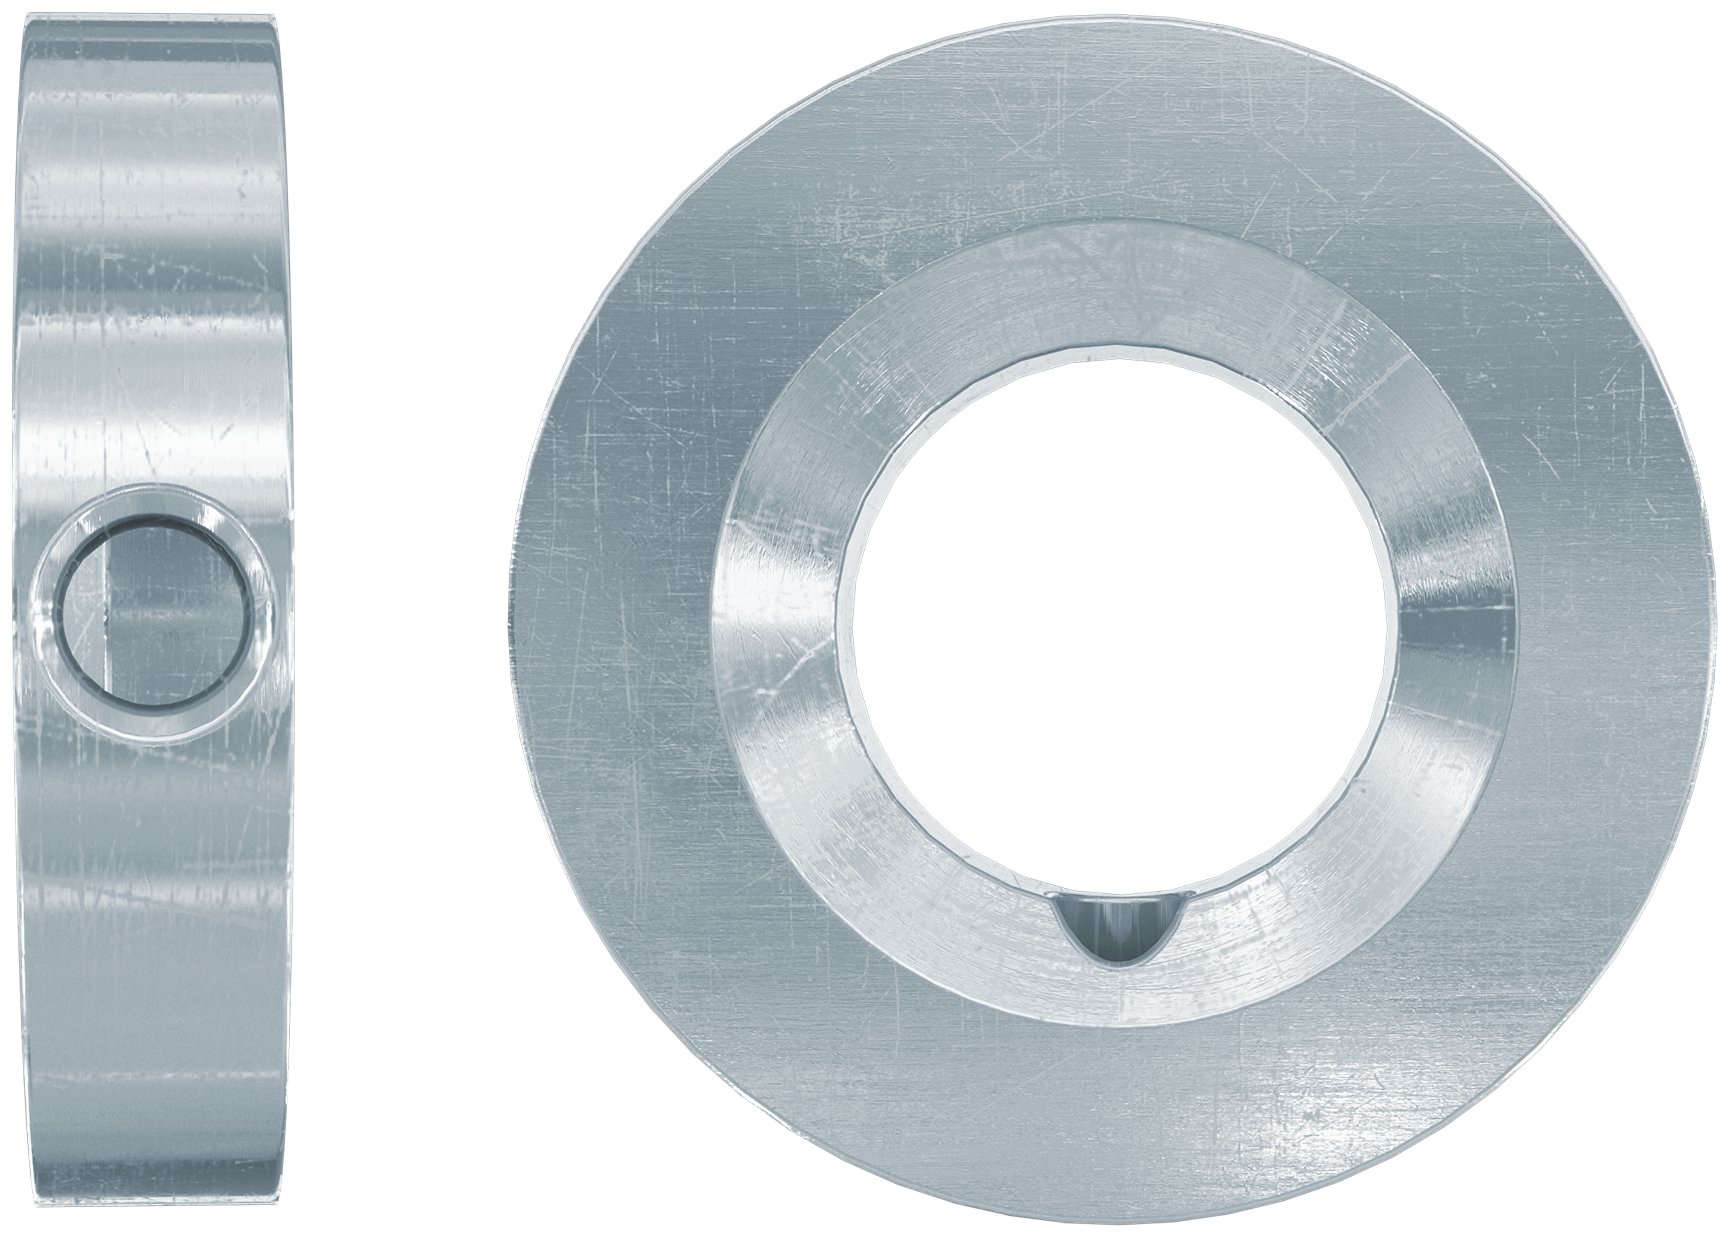 fischer Rondella di riempimento FFD 26x12x6 + cannula per l'iniezione (1 Pz.) Rondella in acciaio inossidabile R per il riempimento del gap anulare fra piastra e fissaggio.